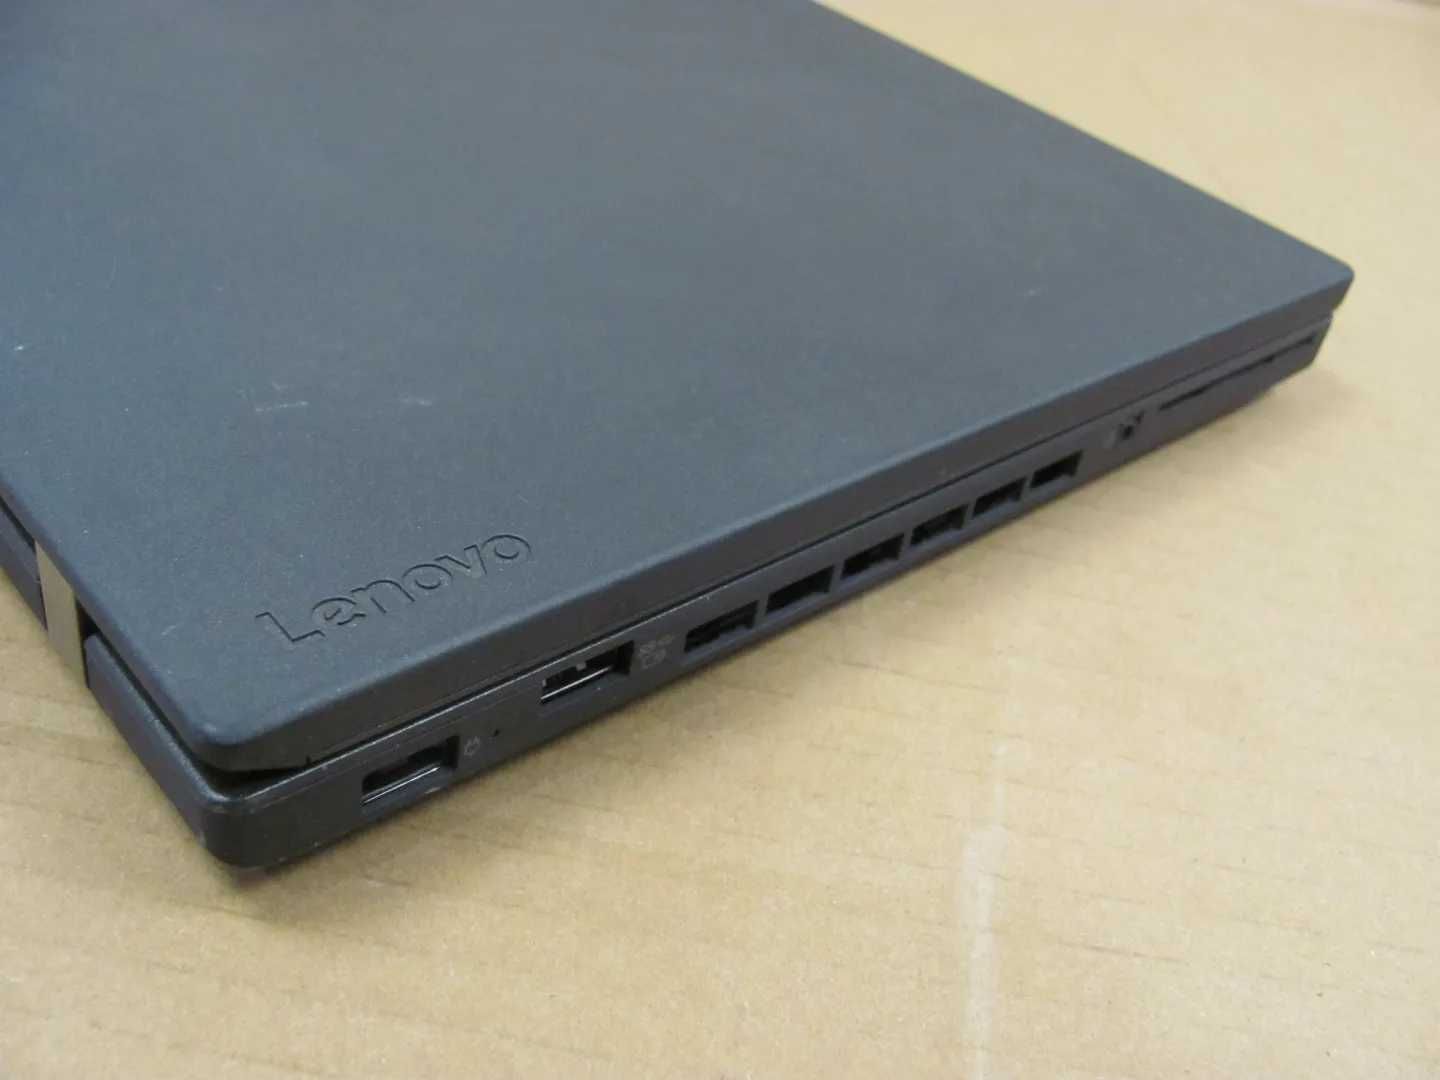 Lenovo ThinkPad T460p FHD i5 6440HQ 2,6Ghz 8Gb 240ssd WebCam LedKey бж